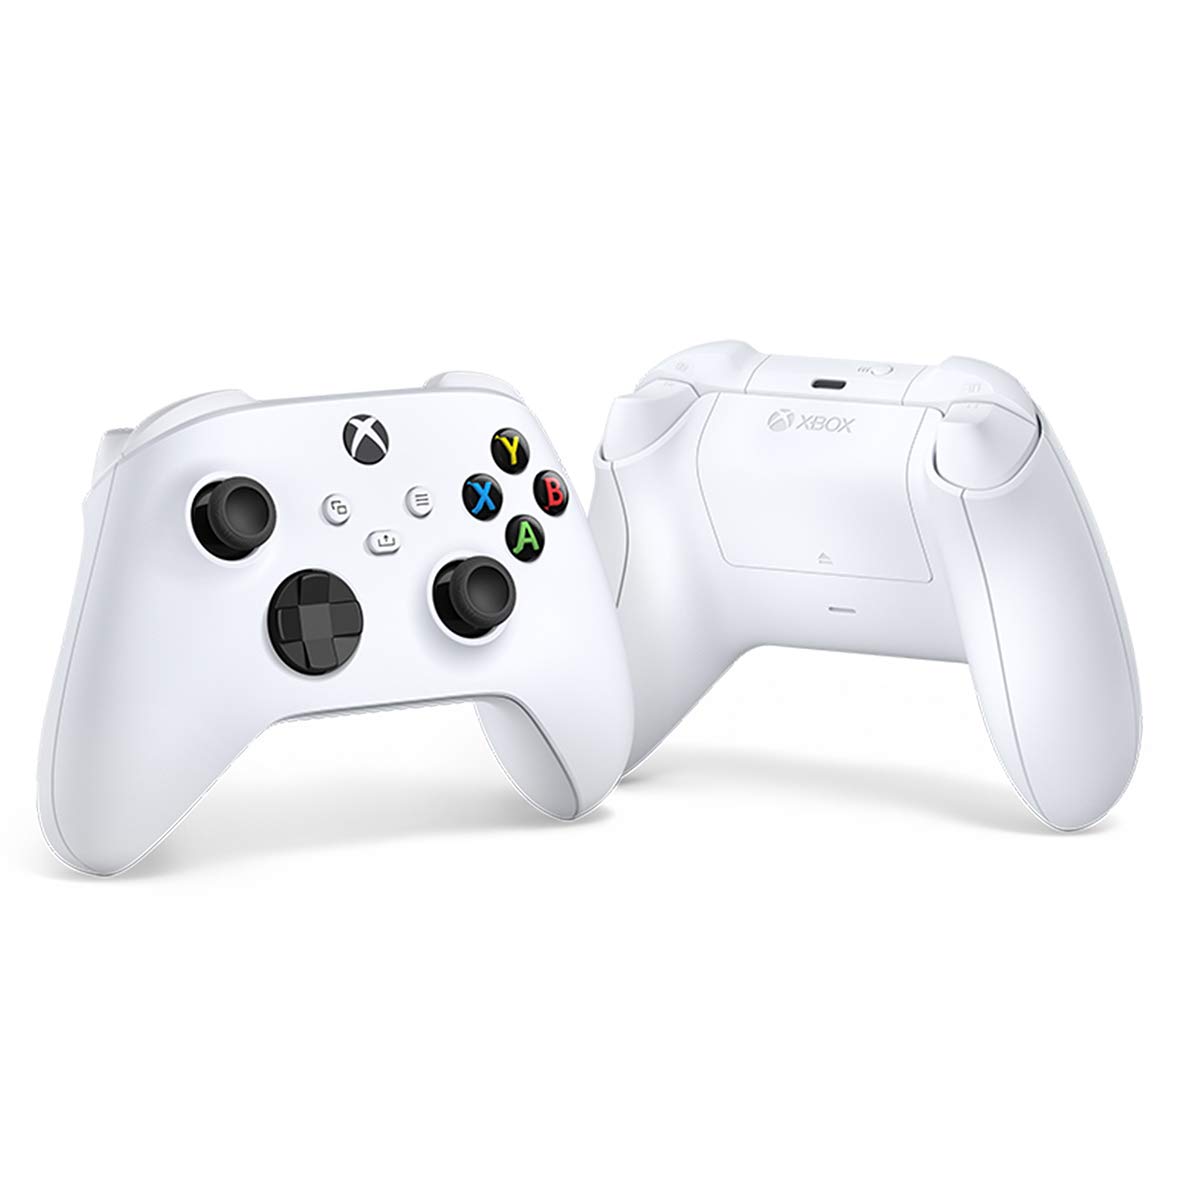 Скриншоты Беспроводной геймпад Xbox Robot White [Белый](QAS-00008) интернет-магазин Омегагейм